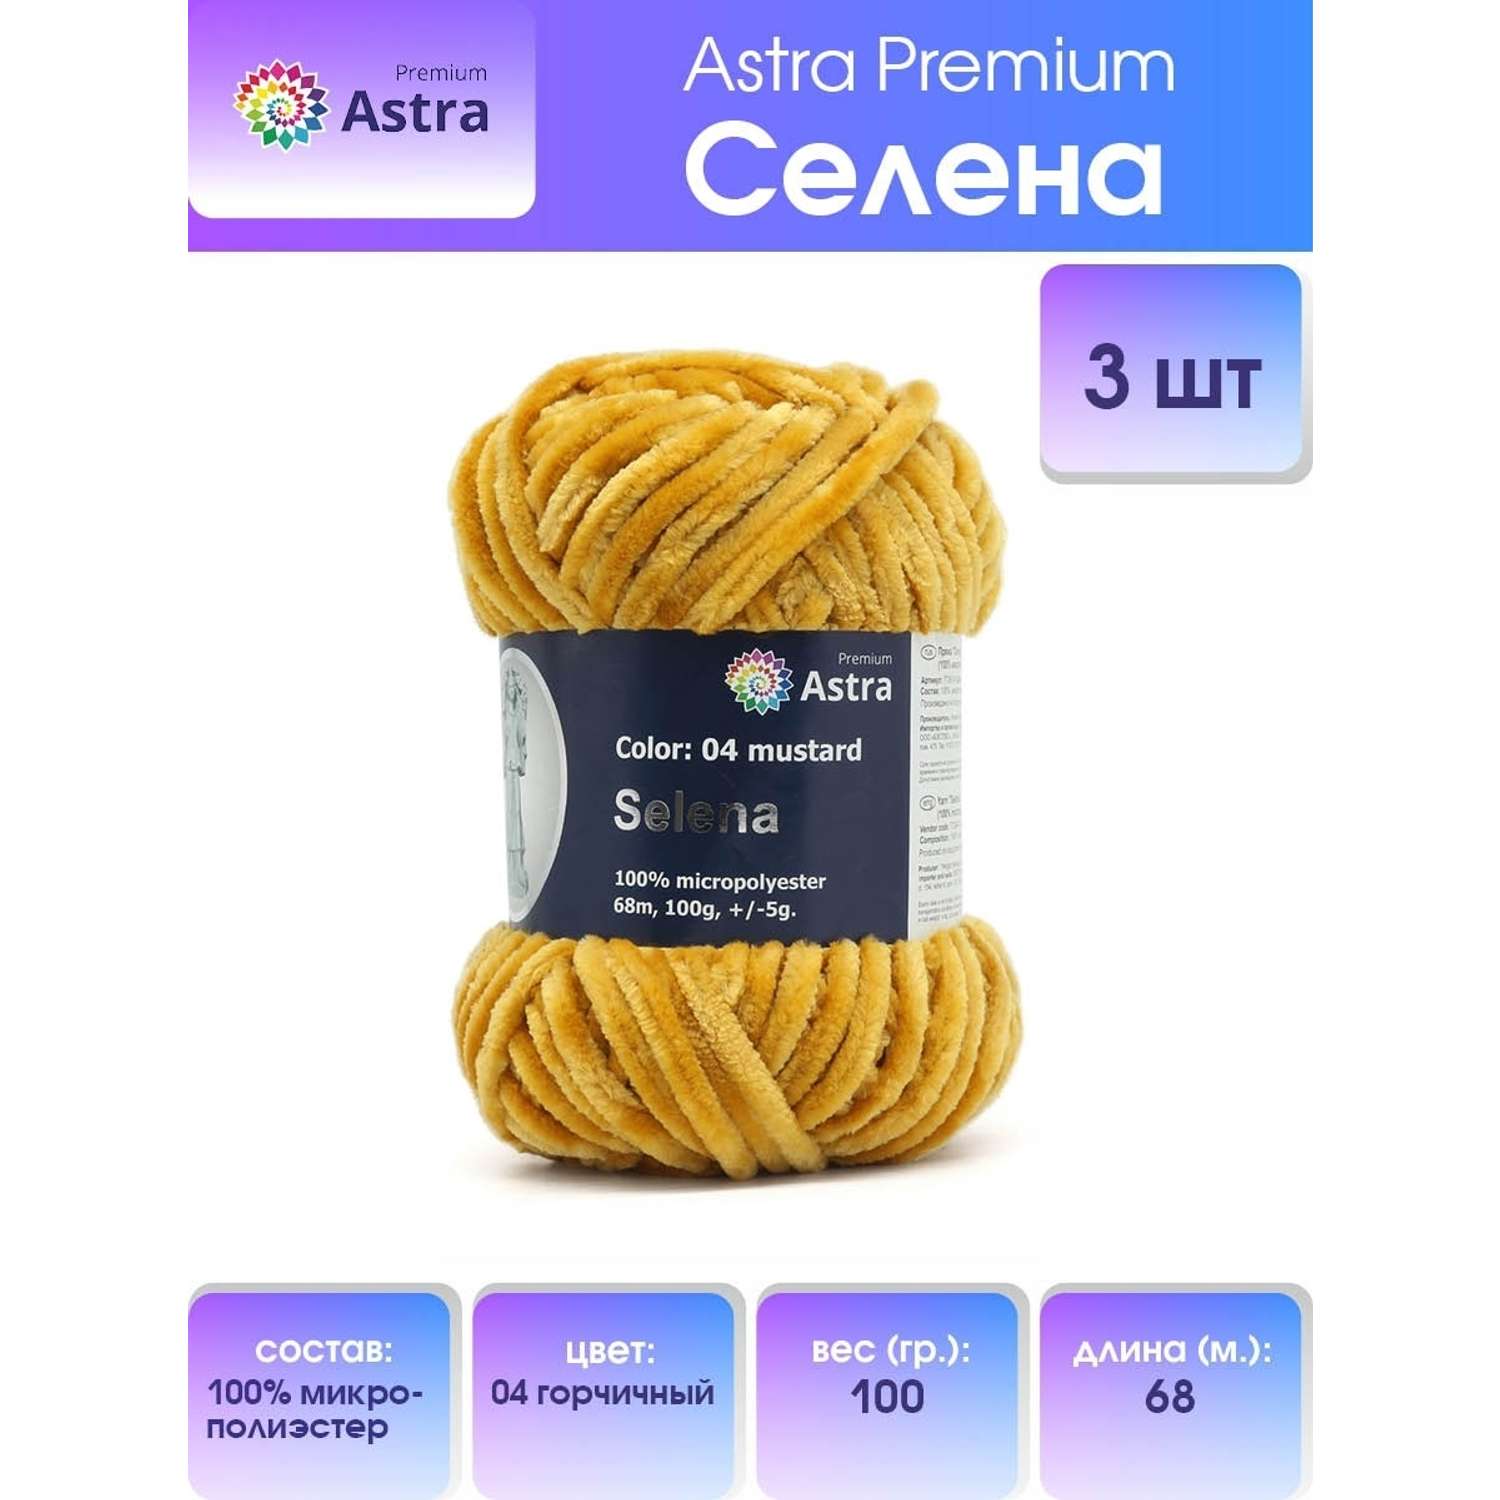 Пряжа для вязания Astra Premium селена мягкая микрополиэстер 100 гр 68 м 04 горчичный 3 мотка - фото 1